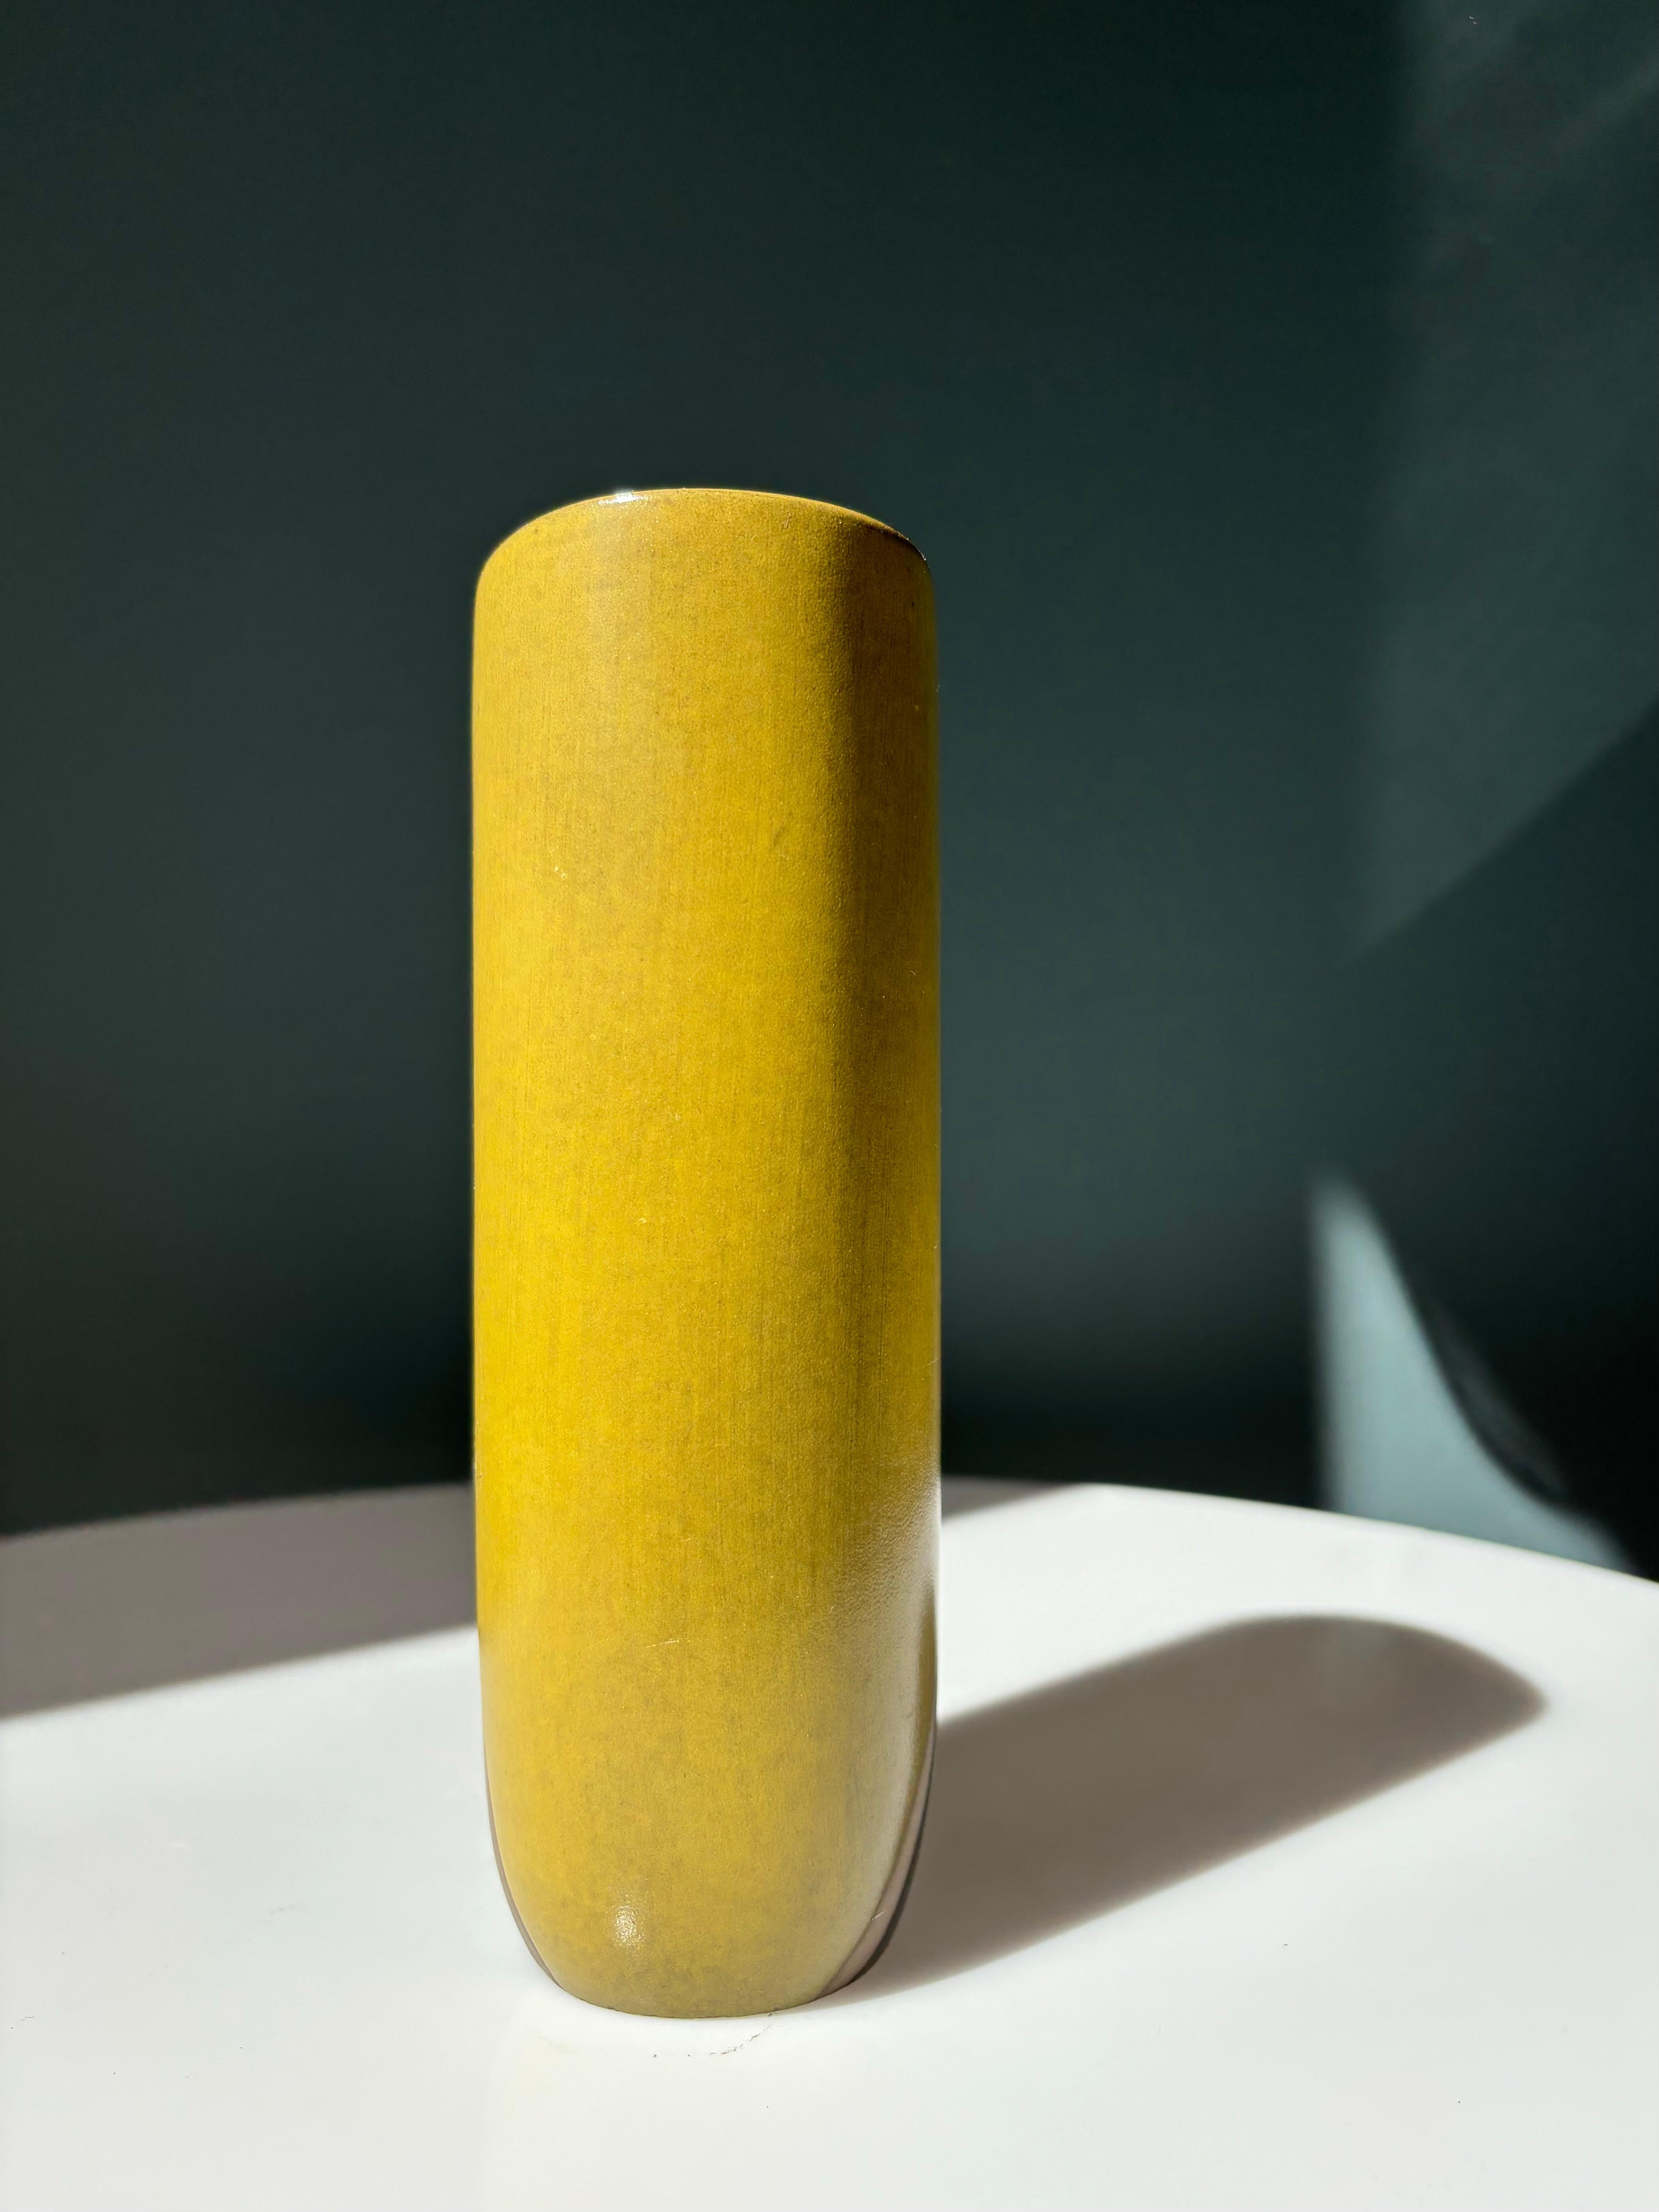 Ceramic Oldfors Ekeby 1950s Graphic Modernist Vase For Sale